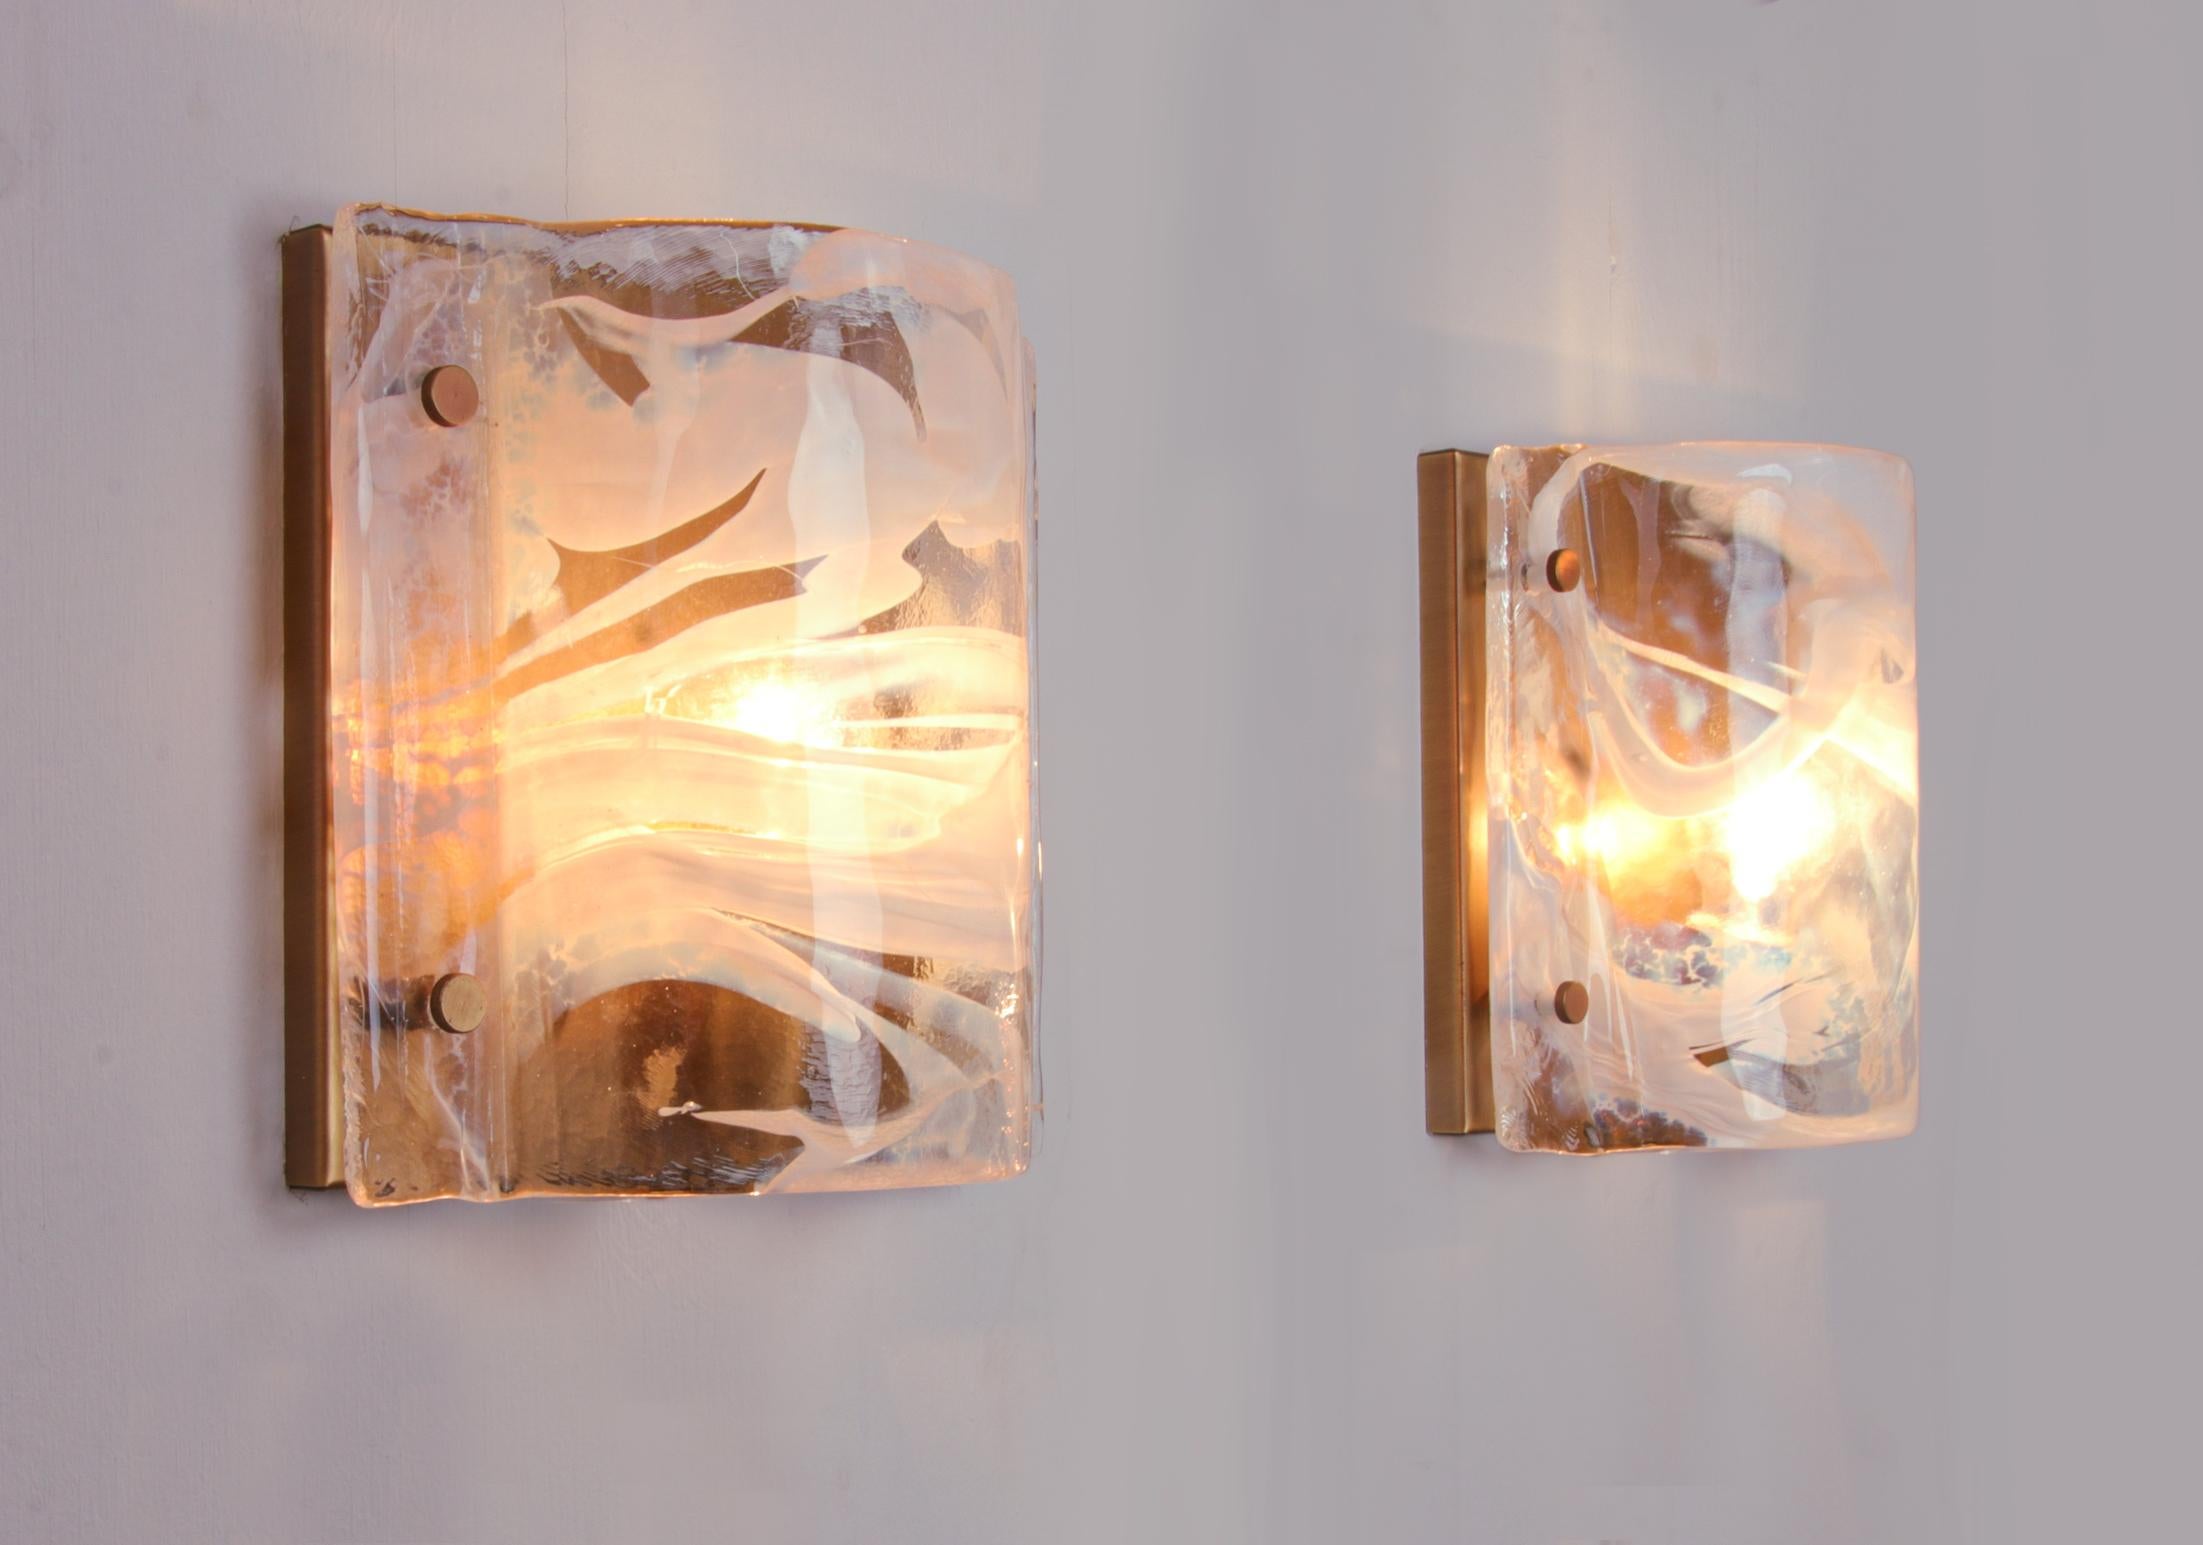 Elegantes Paar Vintage-Wandleuchter mit klaren und weiß getönten mundgeblasenen Murano-Glasschirmen auf einem Messingrahmen.
Entworfen und hergestellt in Deutschland.
Maße: Breite 9